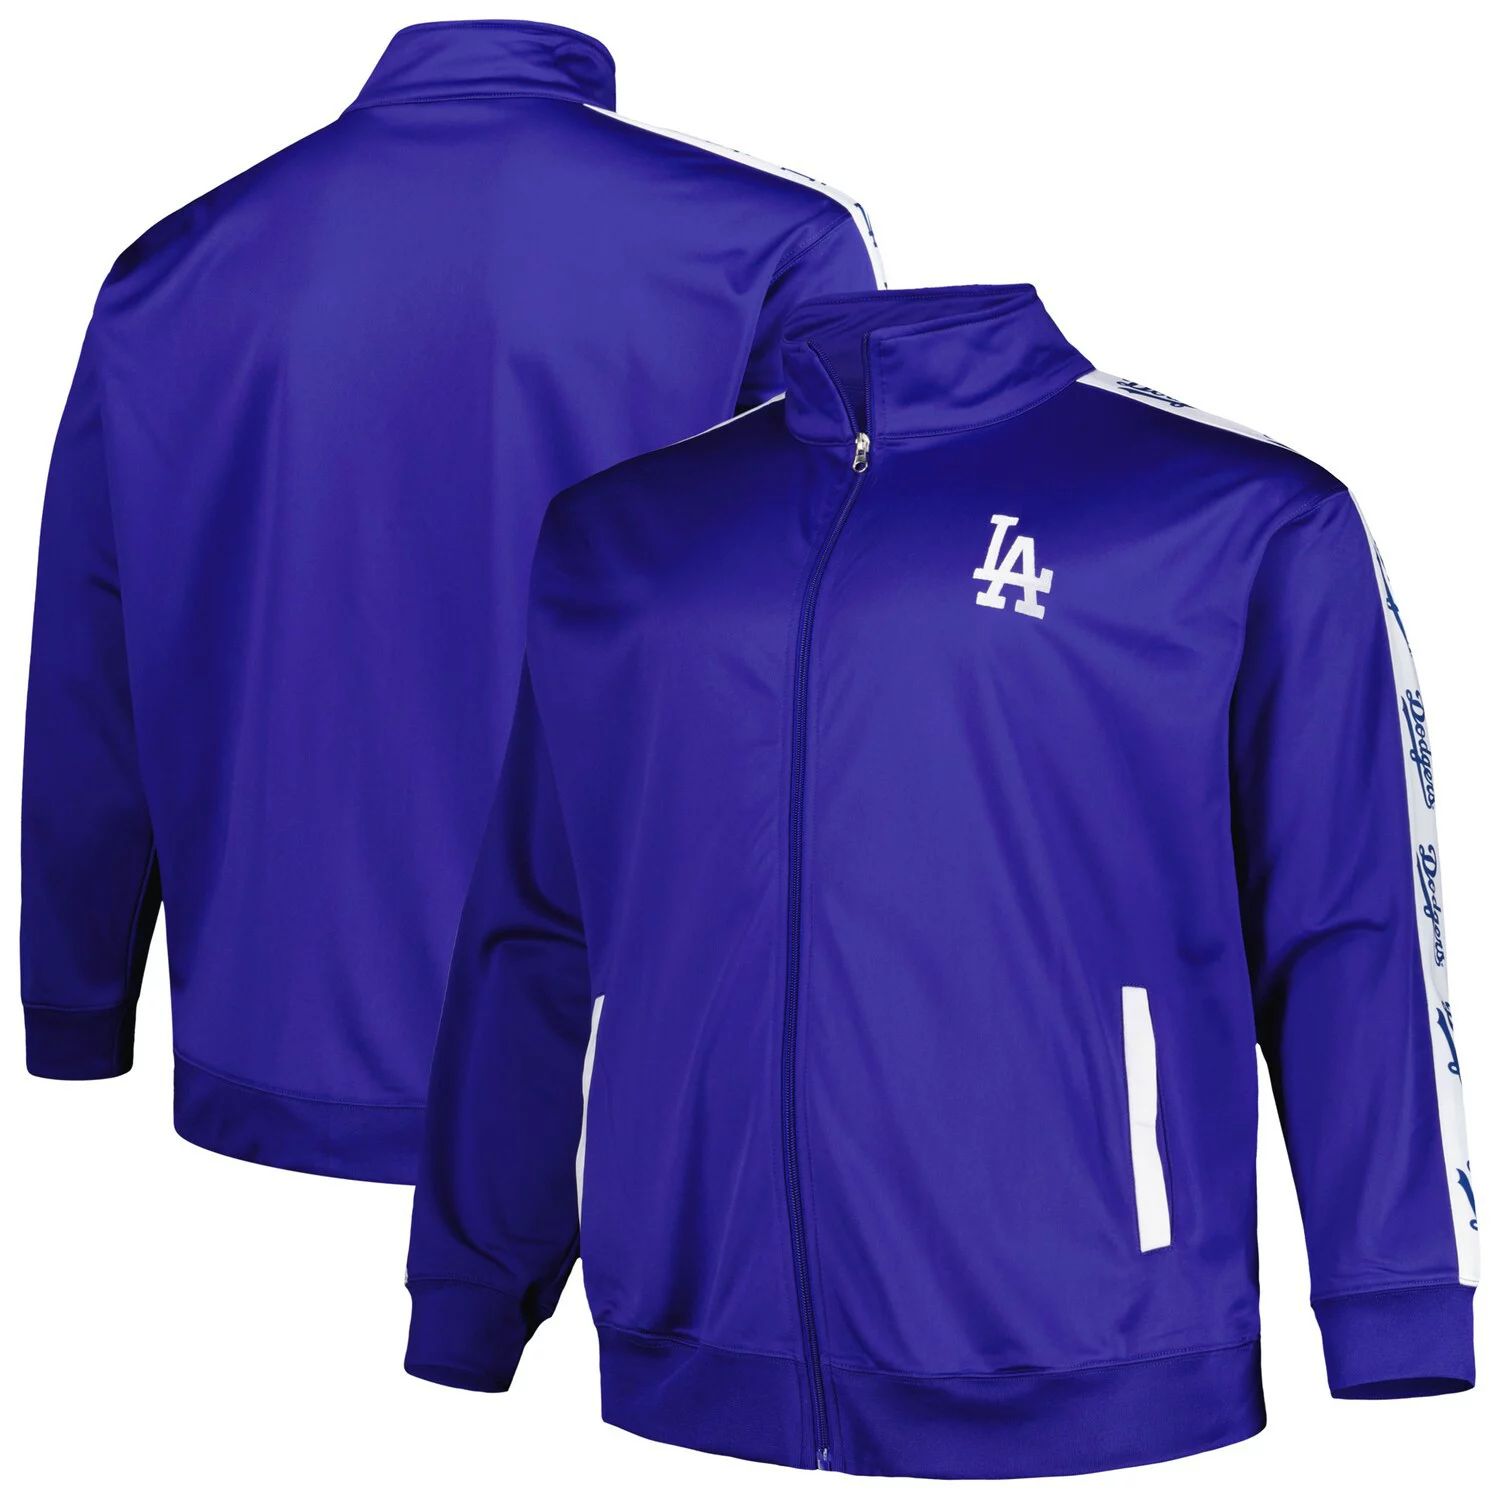 Мужская трикотажная спортивная куртка Royal Los Angeles Dodgers с молнией во всю длину